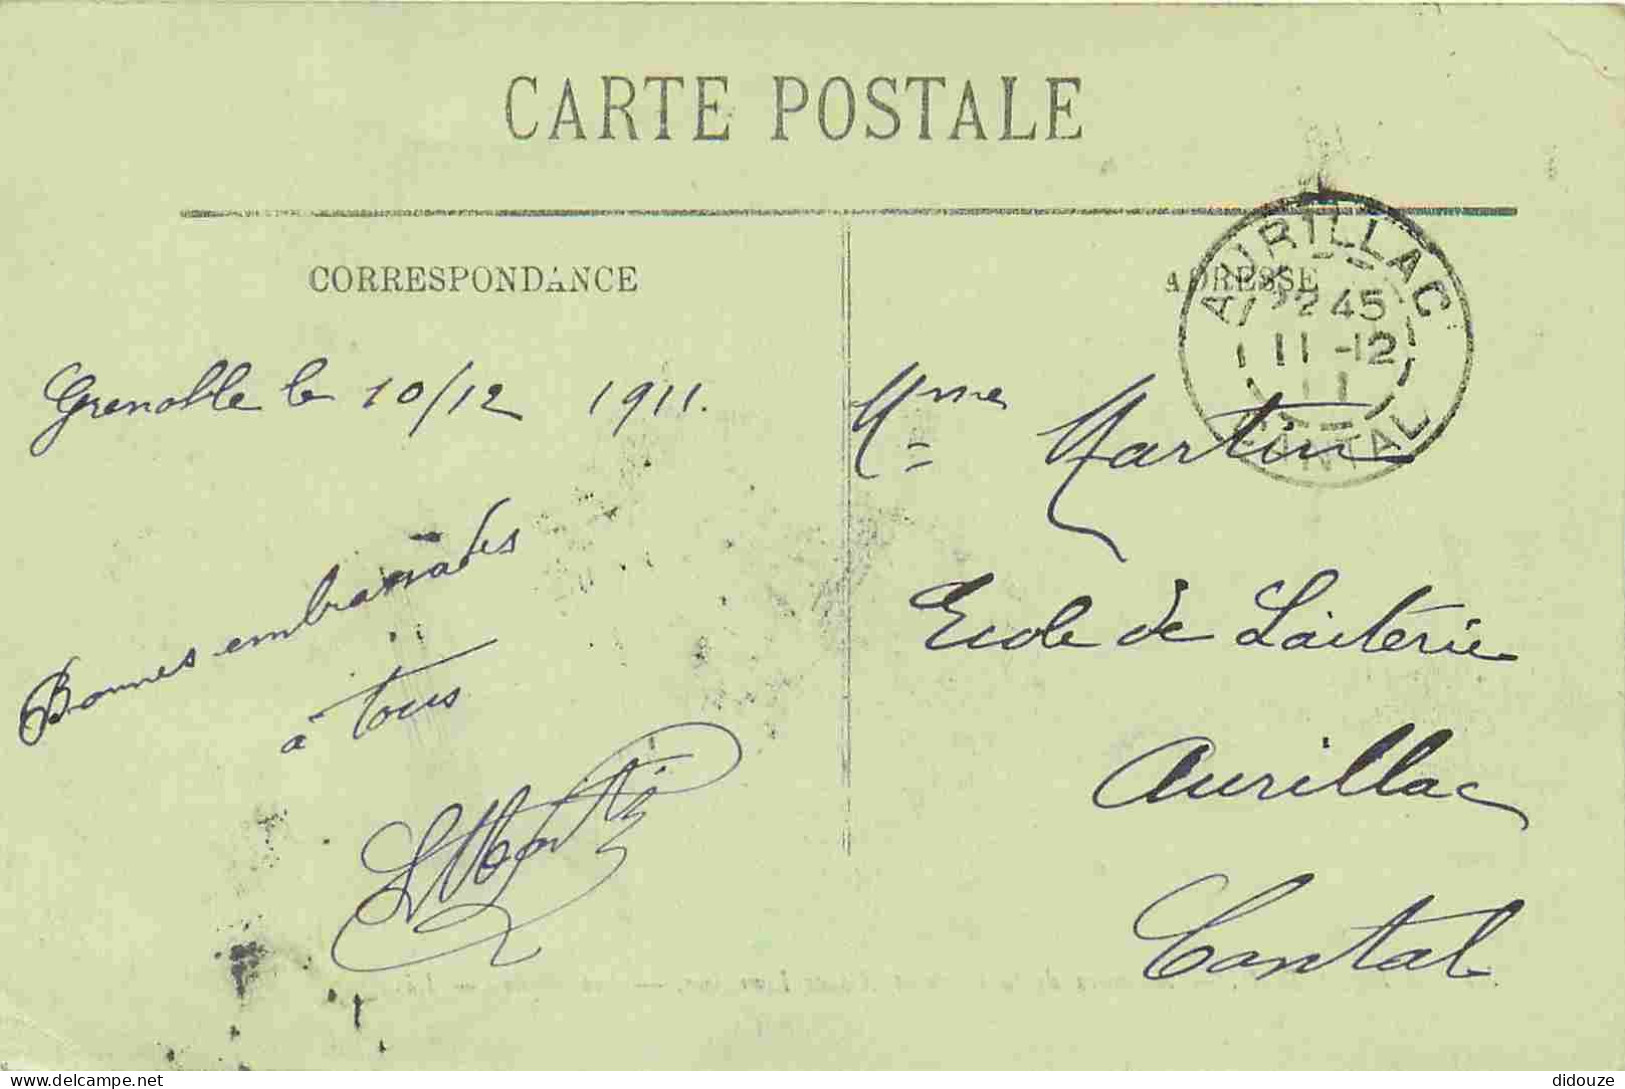 38 - Grenoble - Avenues De La Gare Et Alsace-Lorraine - Animée - Tramway - CPA - Oblitération Ronde De 1911 - Voir Scans - Grenoble